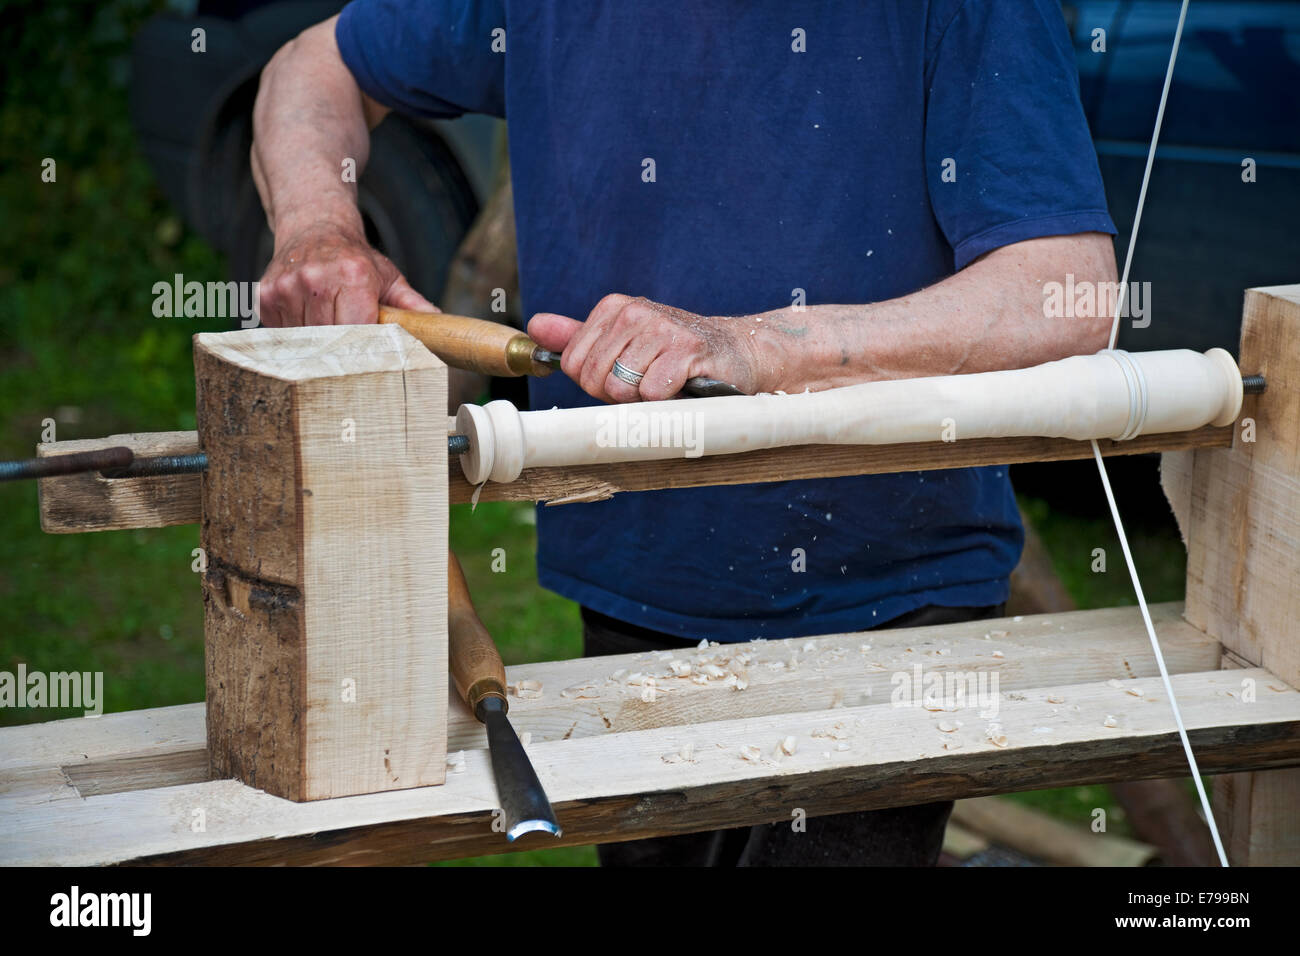 Gros plan de l'homme personne traditionnelle tournant le bois tournant turner travaillant à l'aide d'un tour à main à poteau Angleterre Royaume-Uni GB Grande-Bretagne Banque D'Images